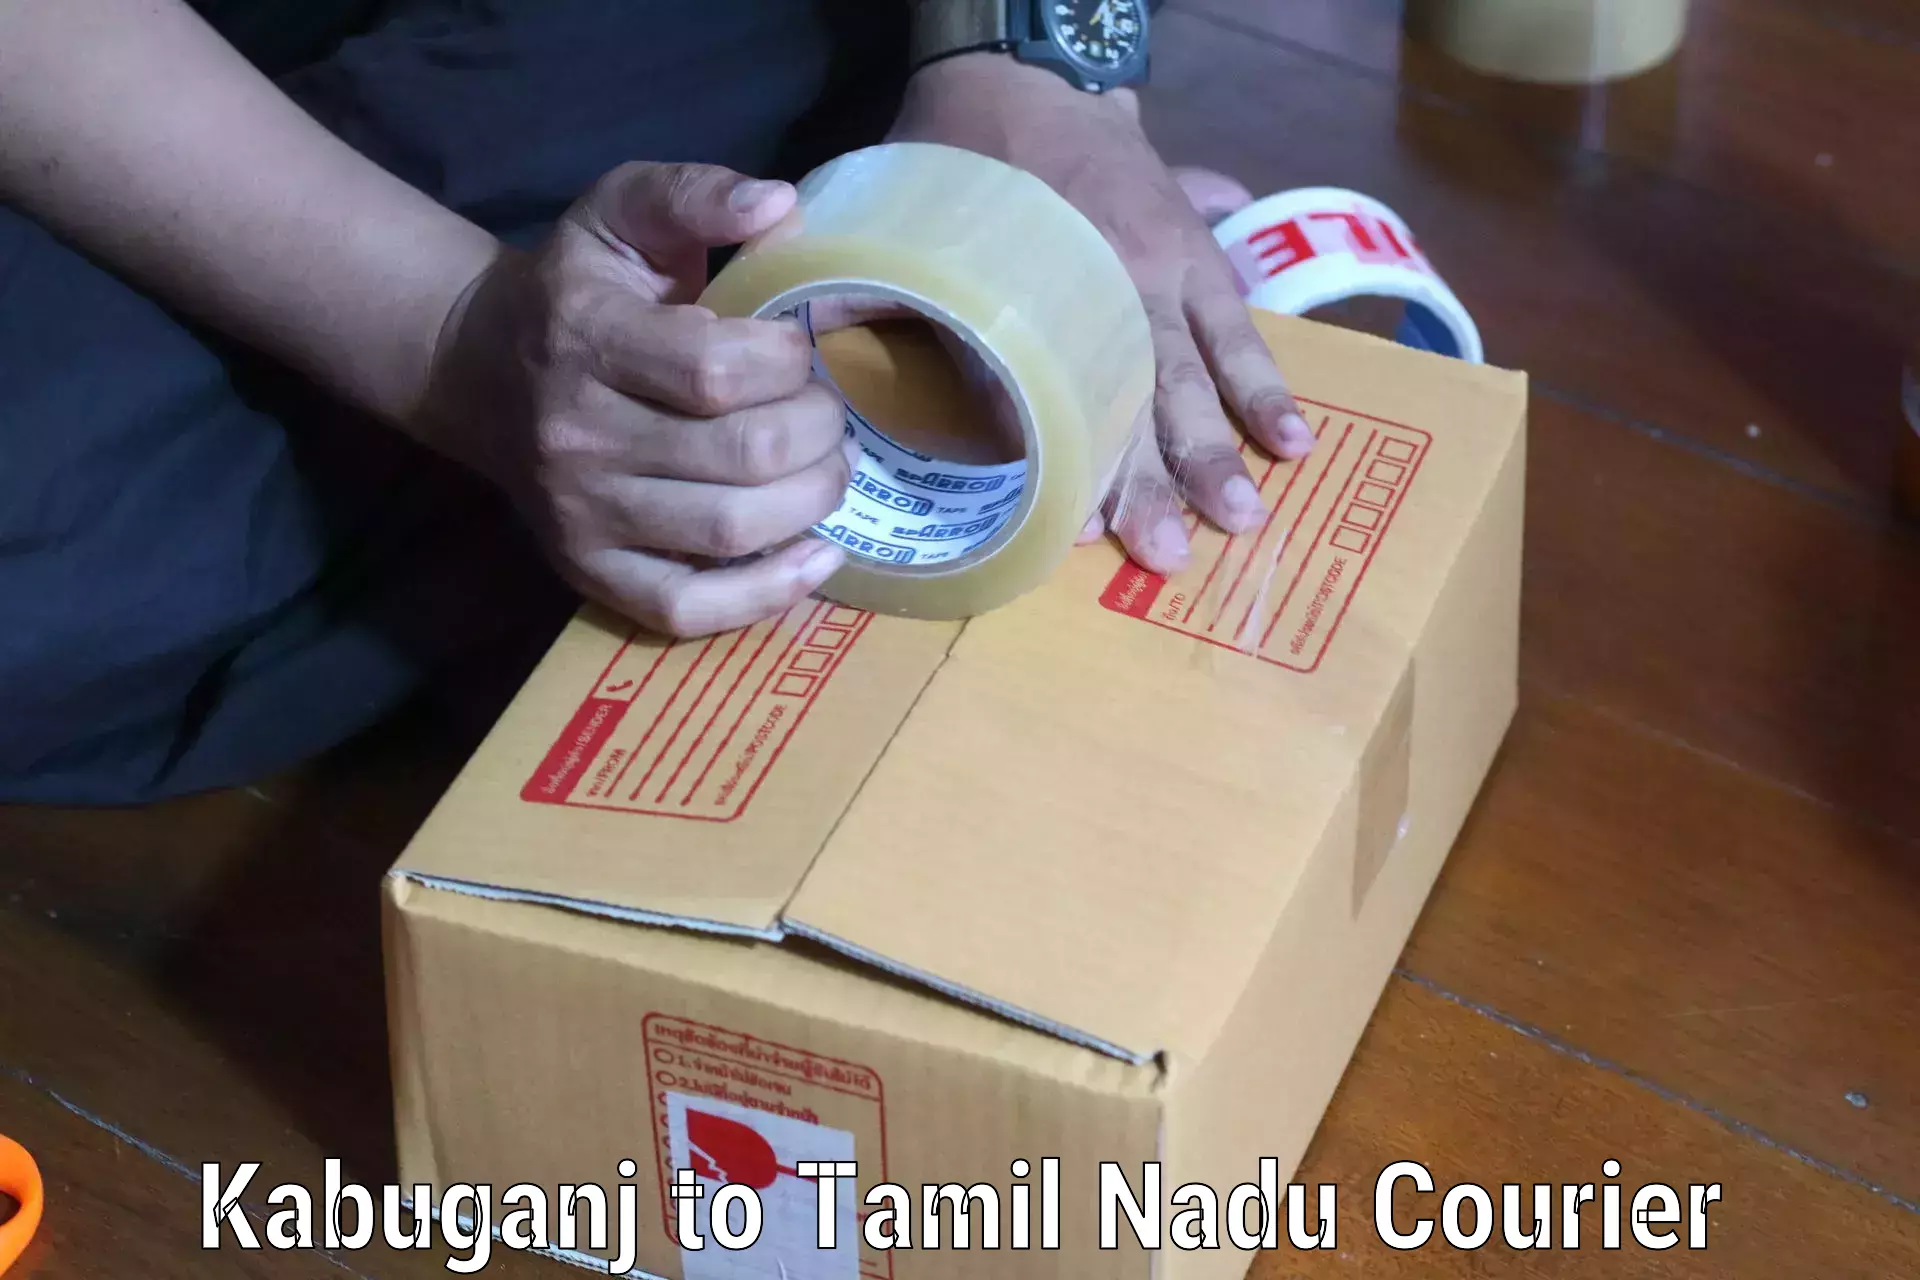 Lightweight courier Kabuganj to Kodaikanal